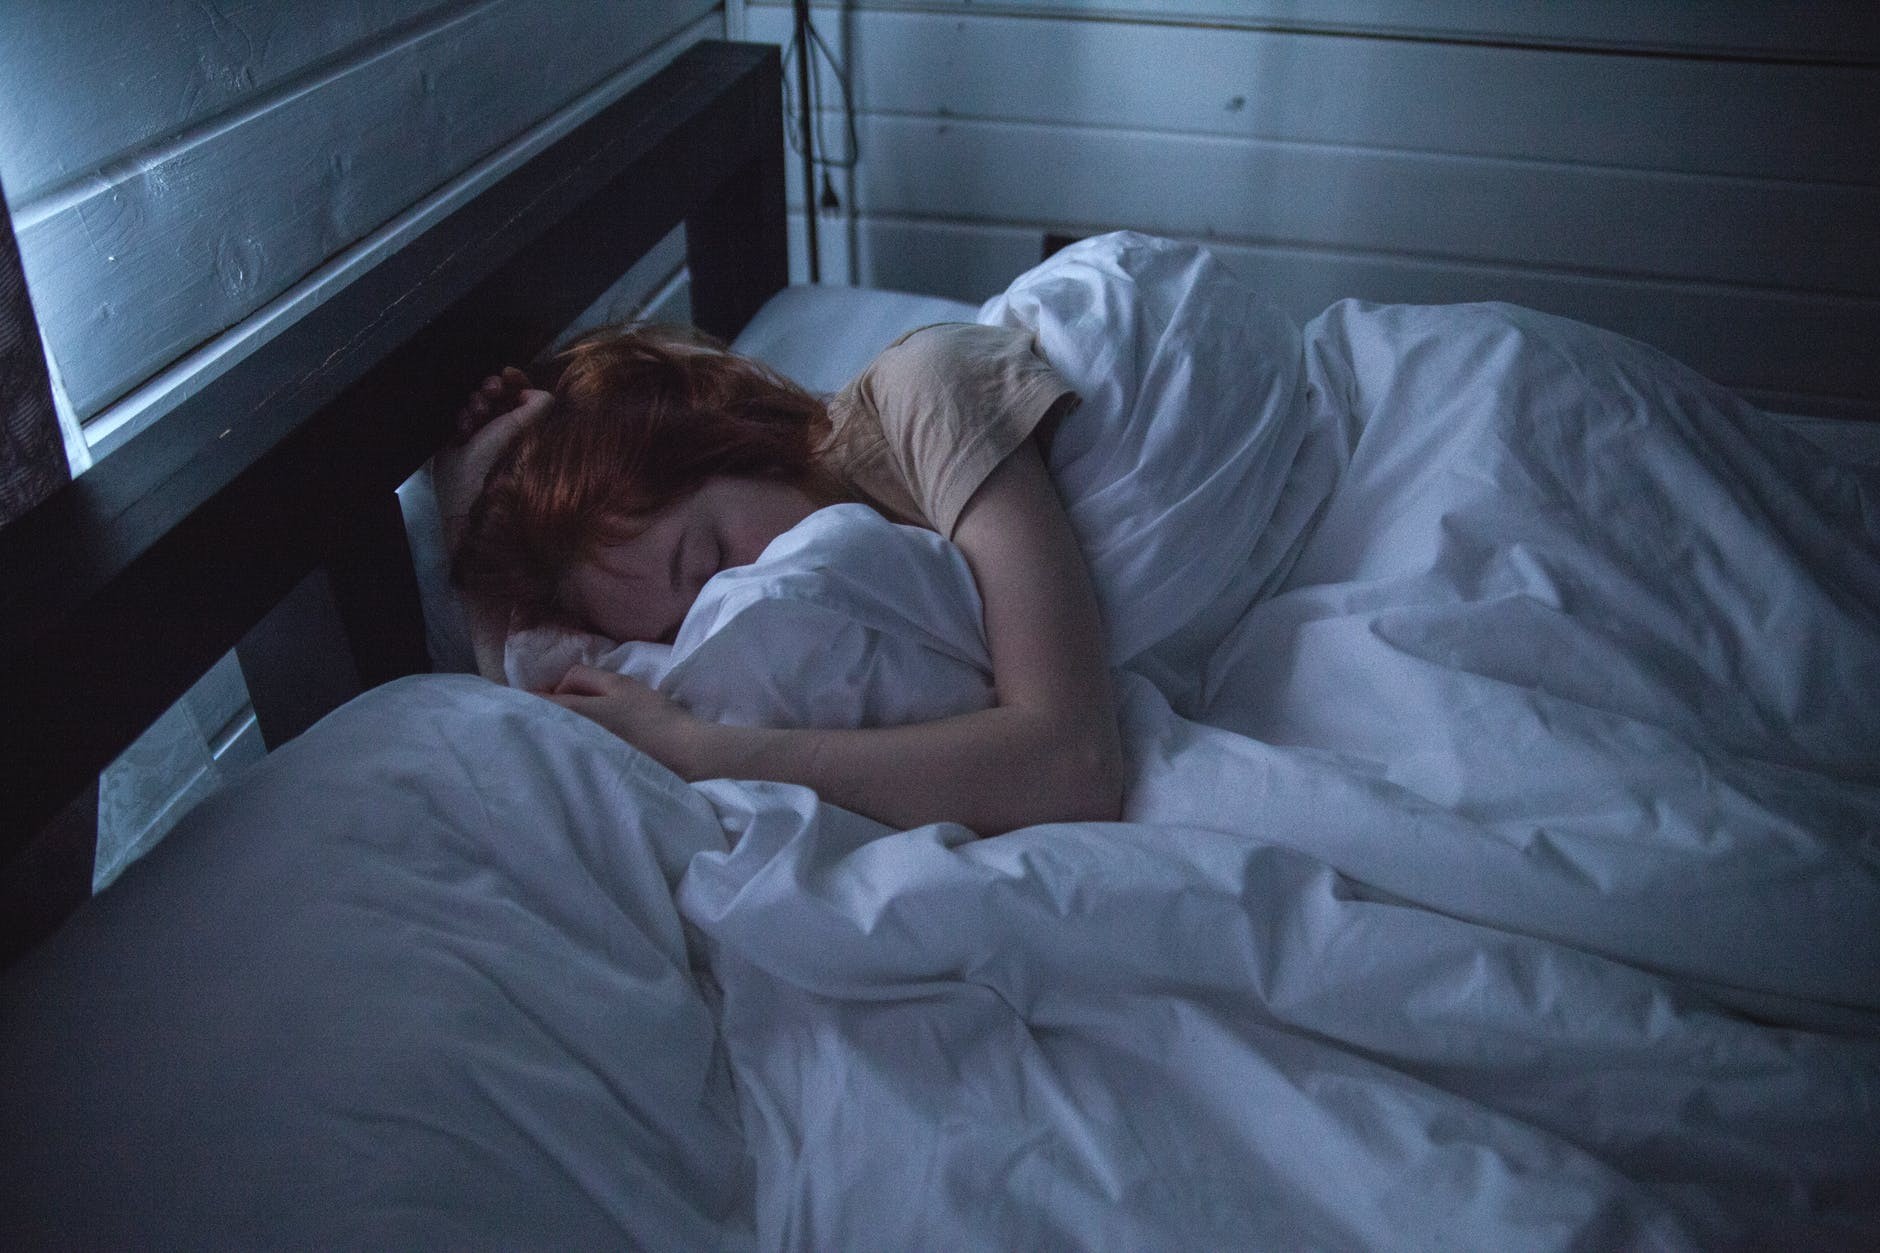 O cheiro da pessoa amada pode te ajudar a dormir melhor, dizem especialistas (Foto: Pexels)